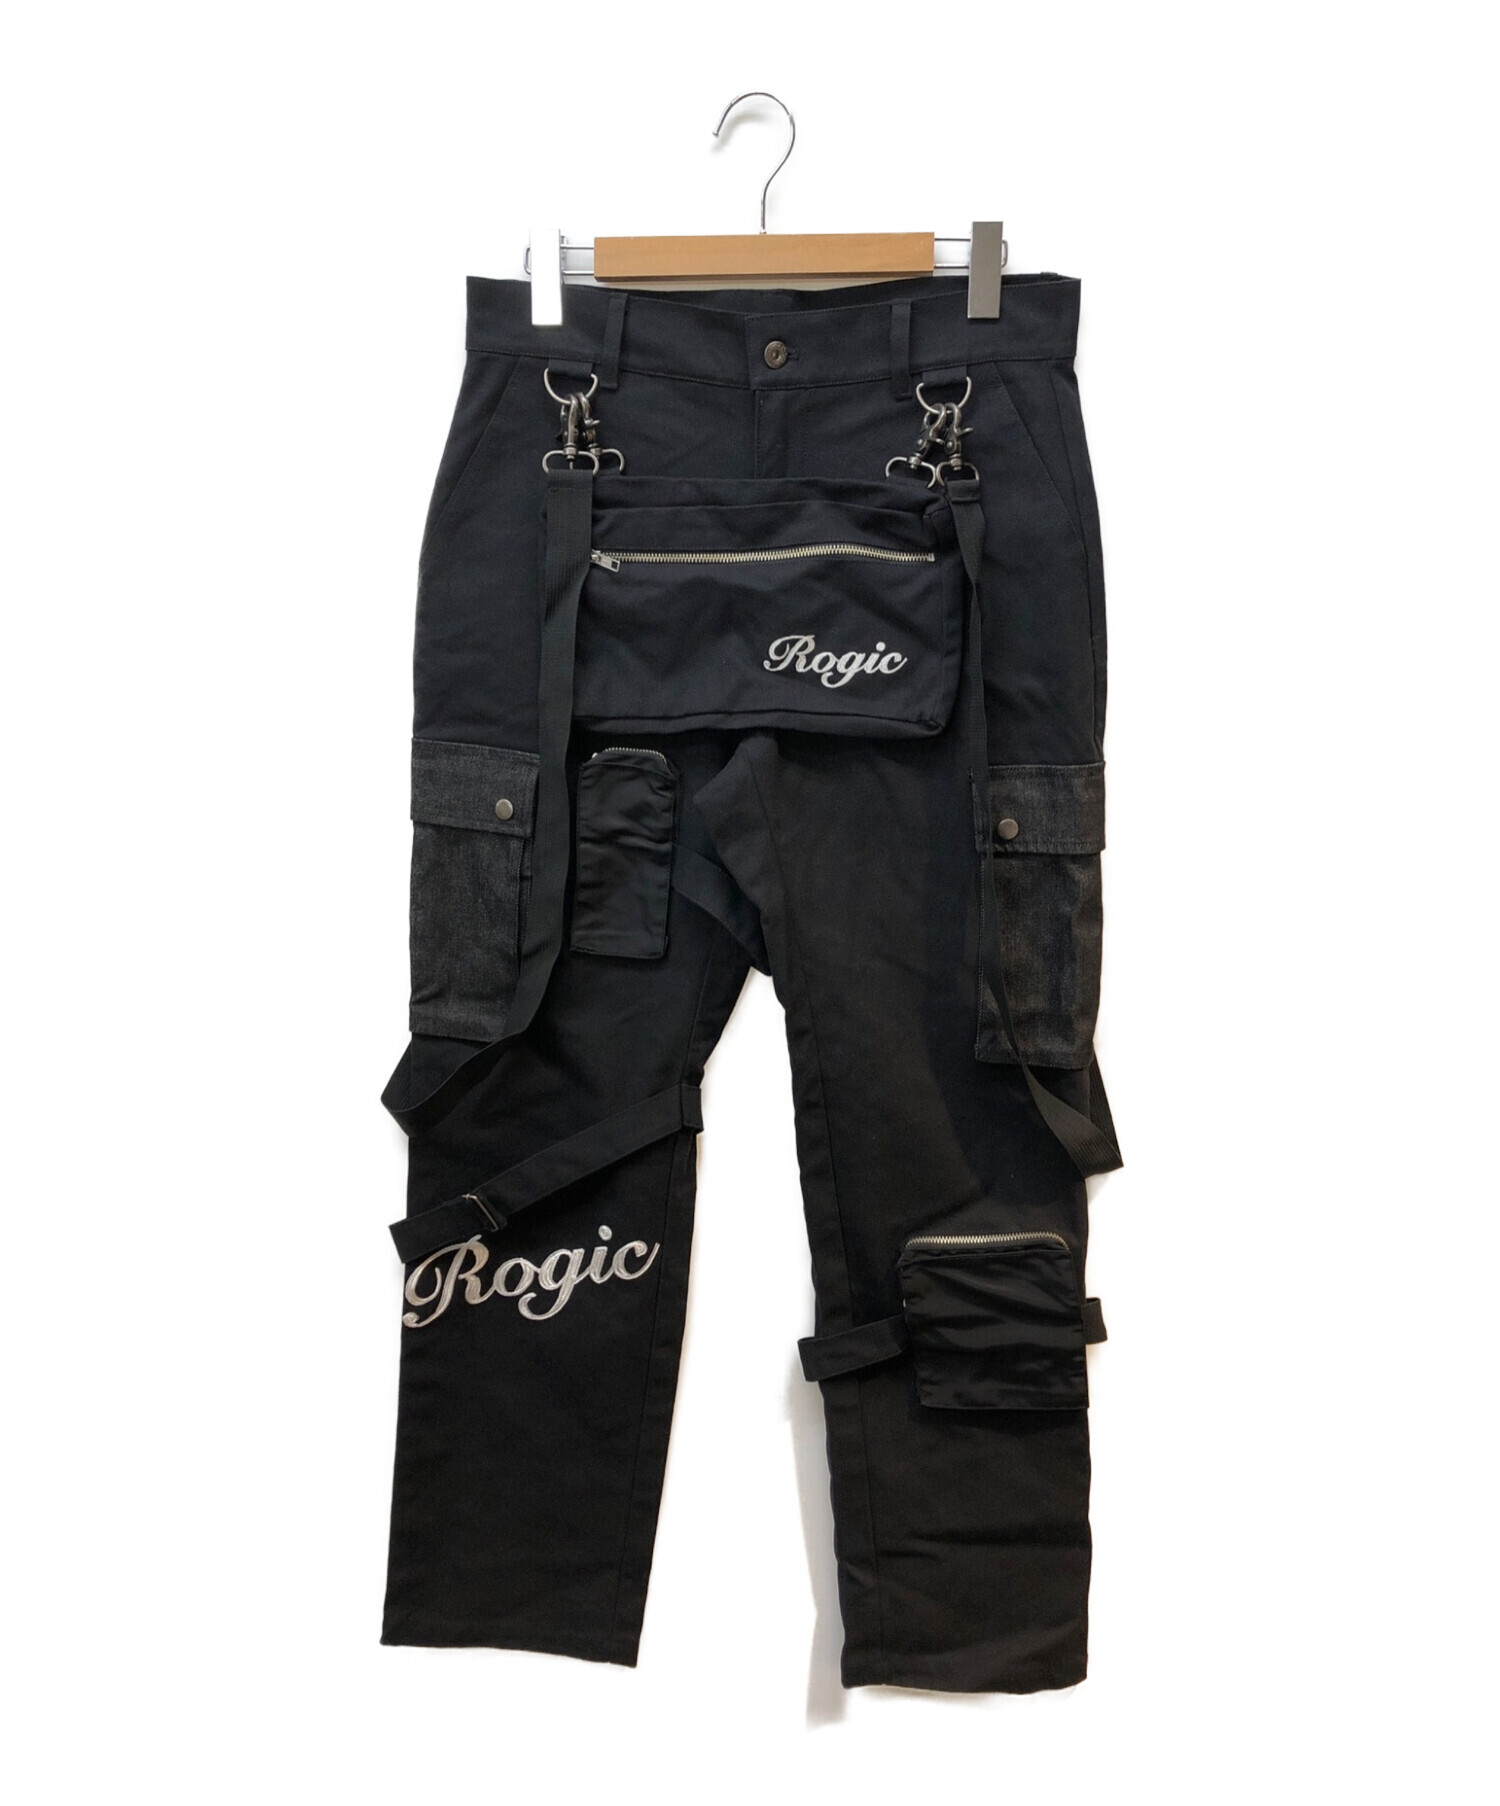 ROGIC 1st pants ボンテージパンツ Mサイズ